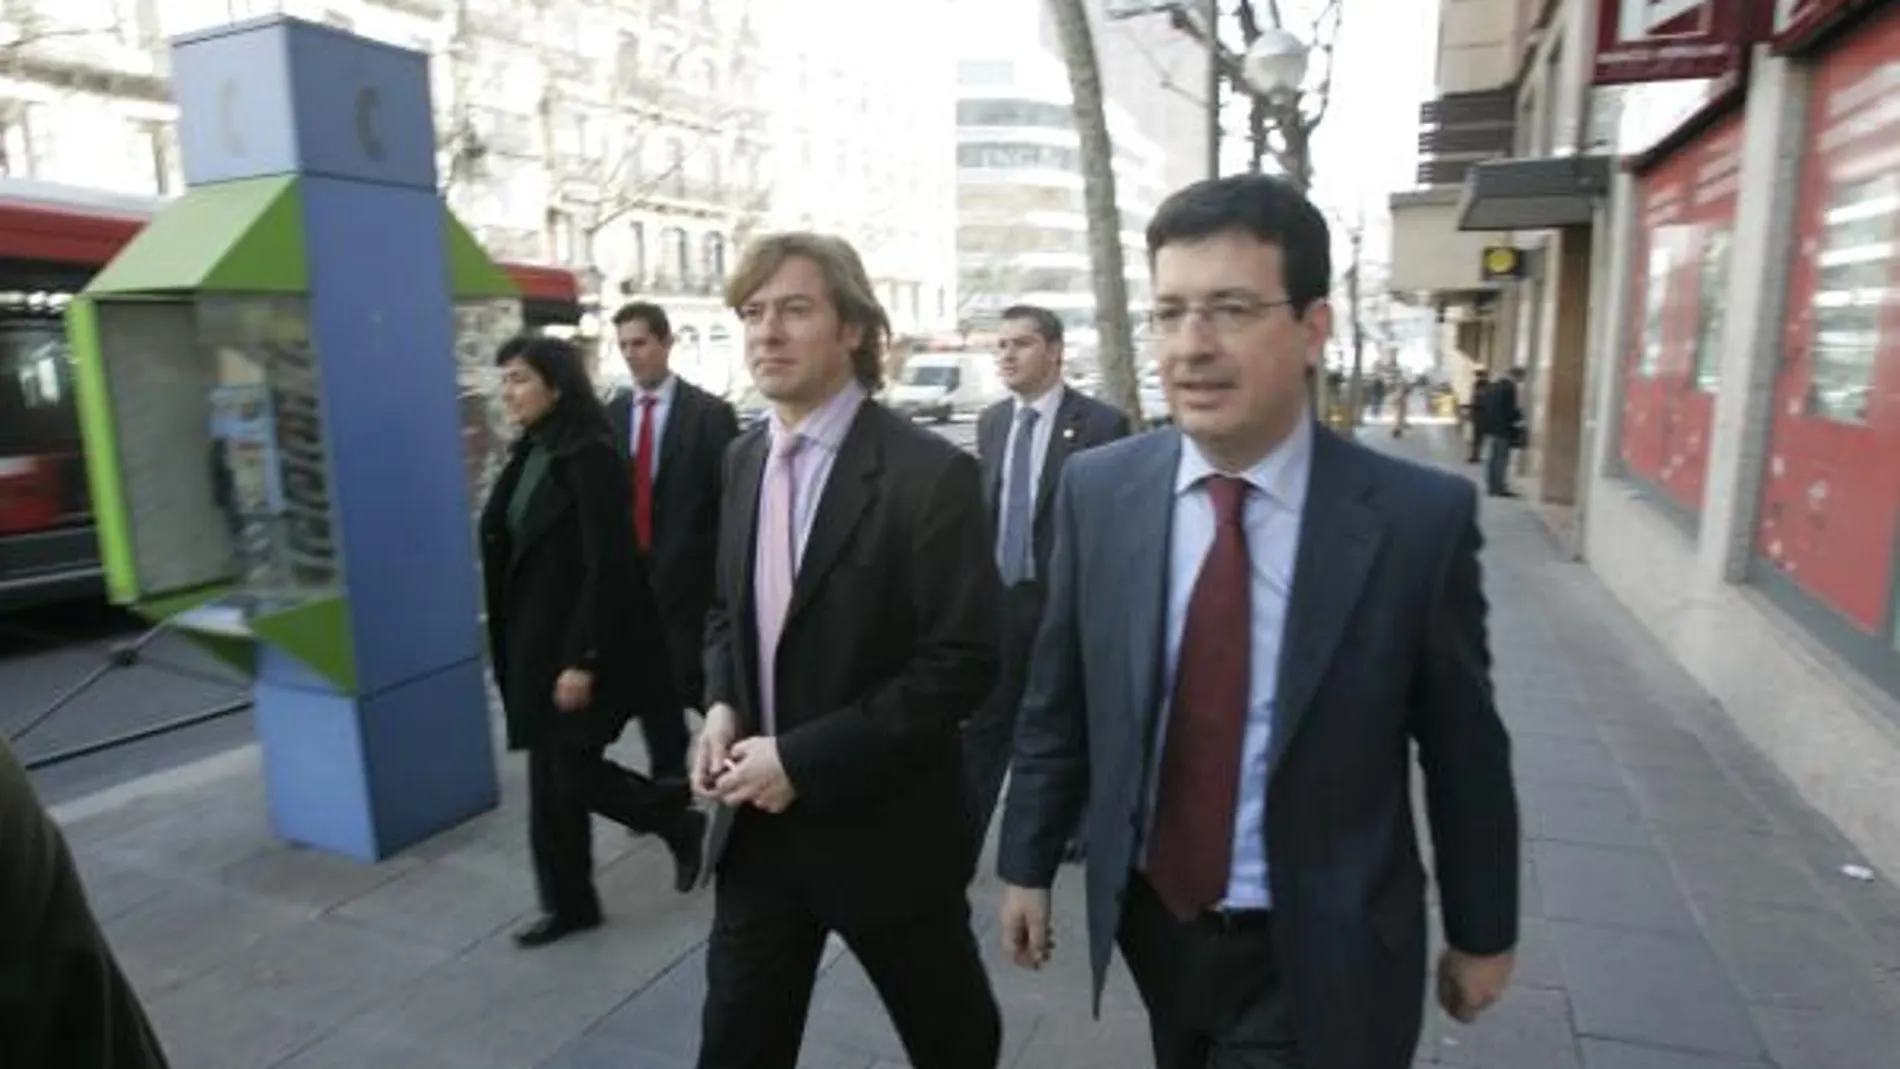 Imagen de archivo del Juez de la Audiencia Nacional Fernando Andreu acompañado por el Juez Pedraz